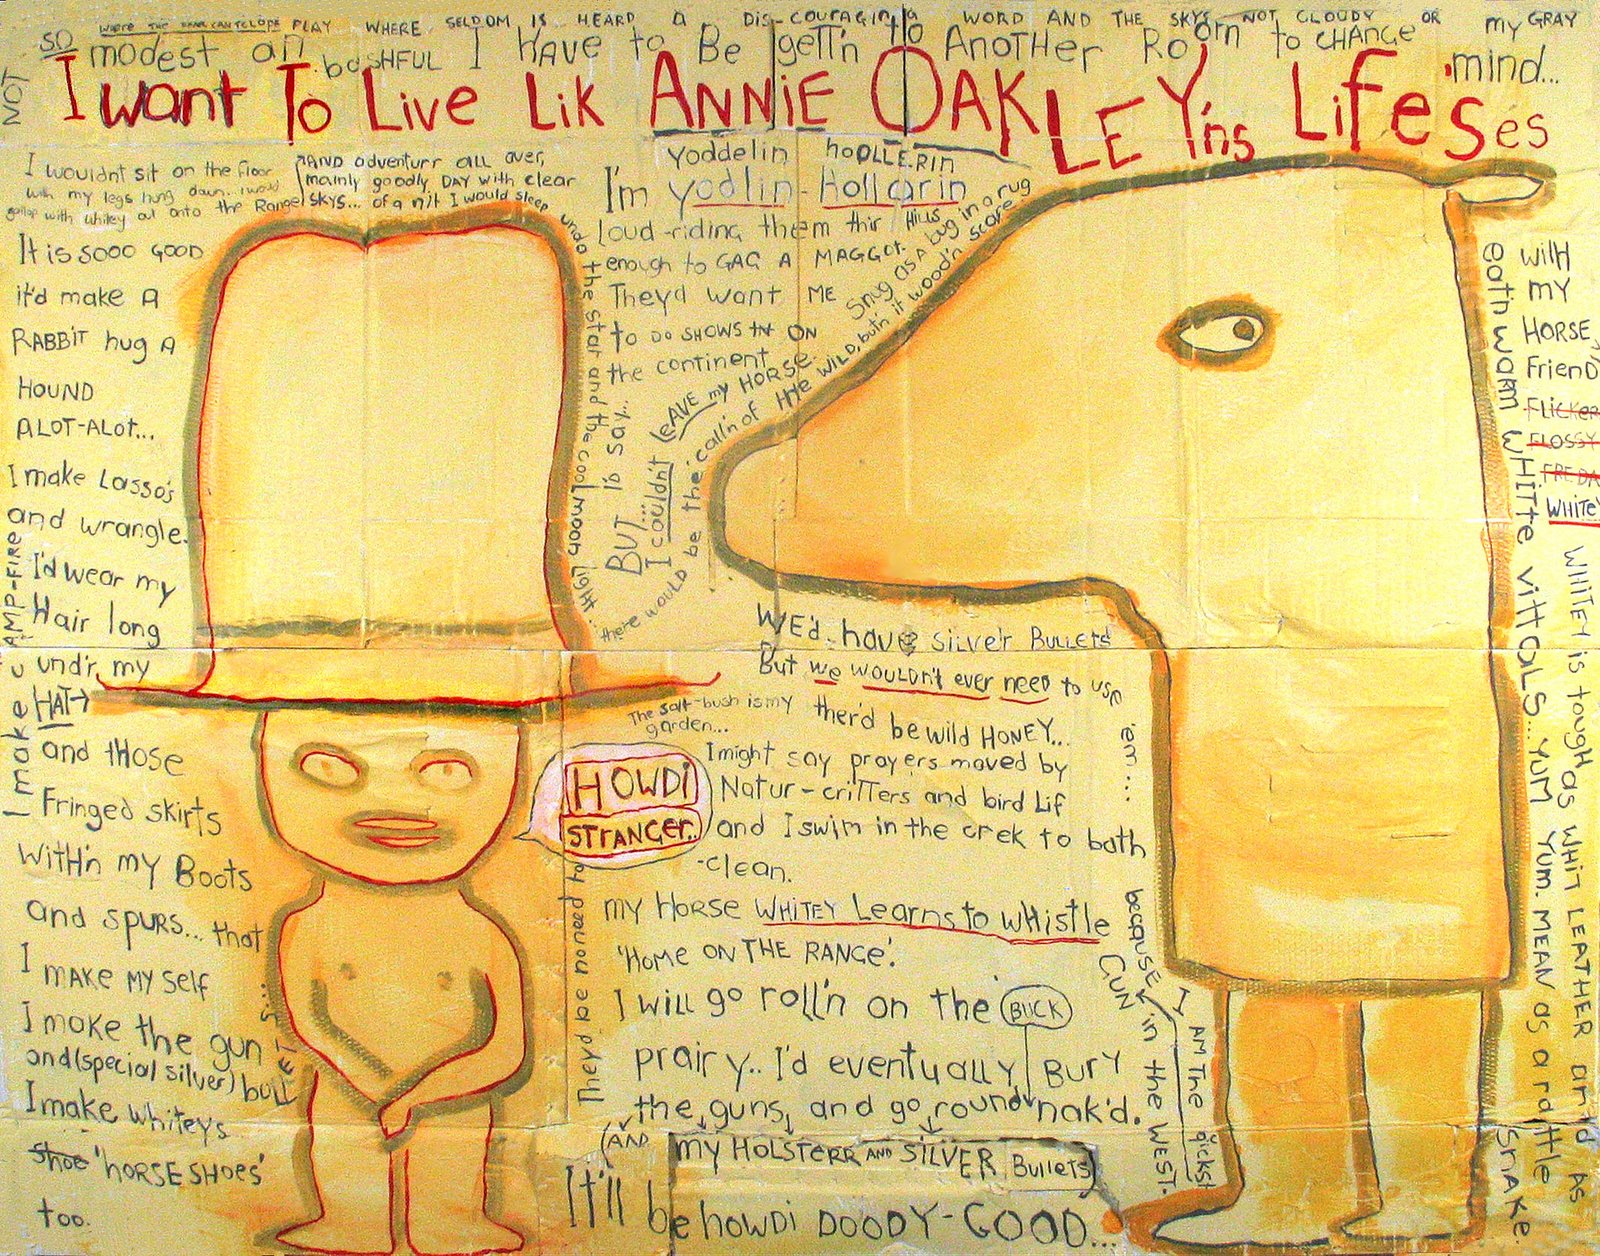 [i+want+to+live+like+annie+oakley,+gouache+on+board+2006+2600x+1900.jpg]